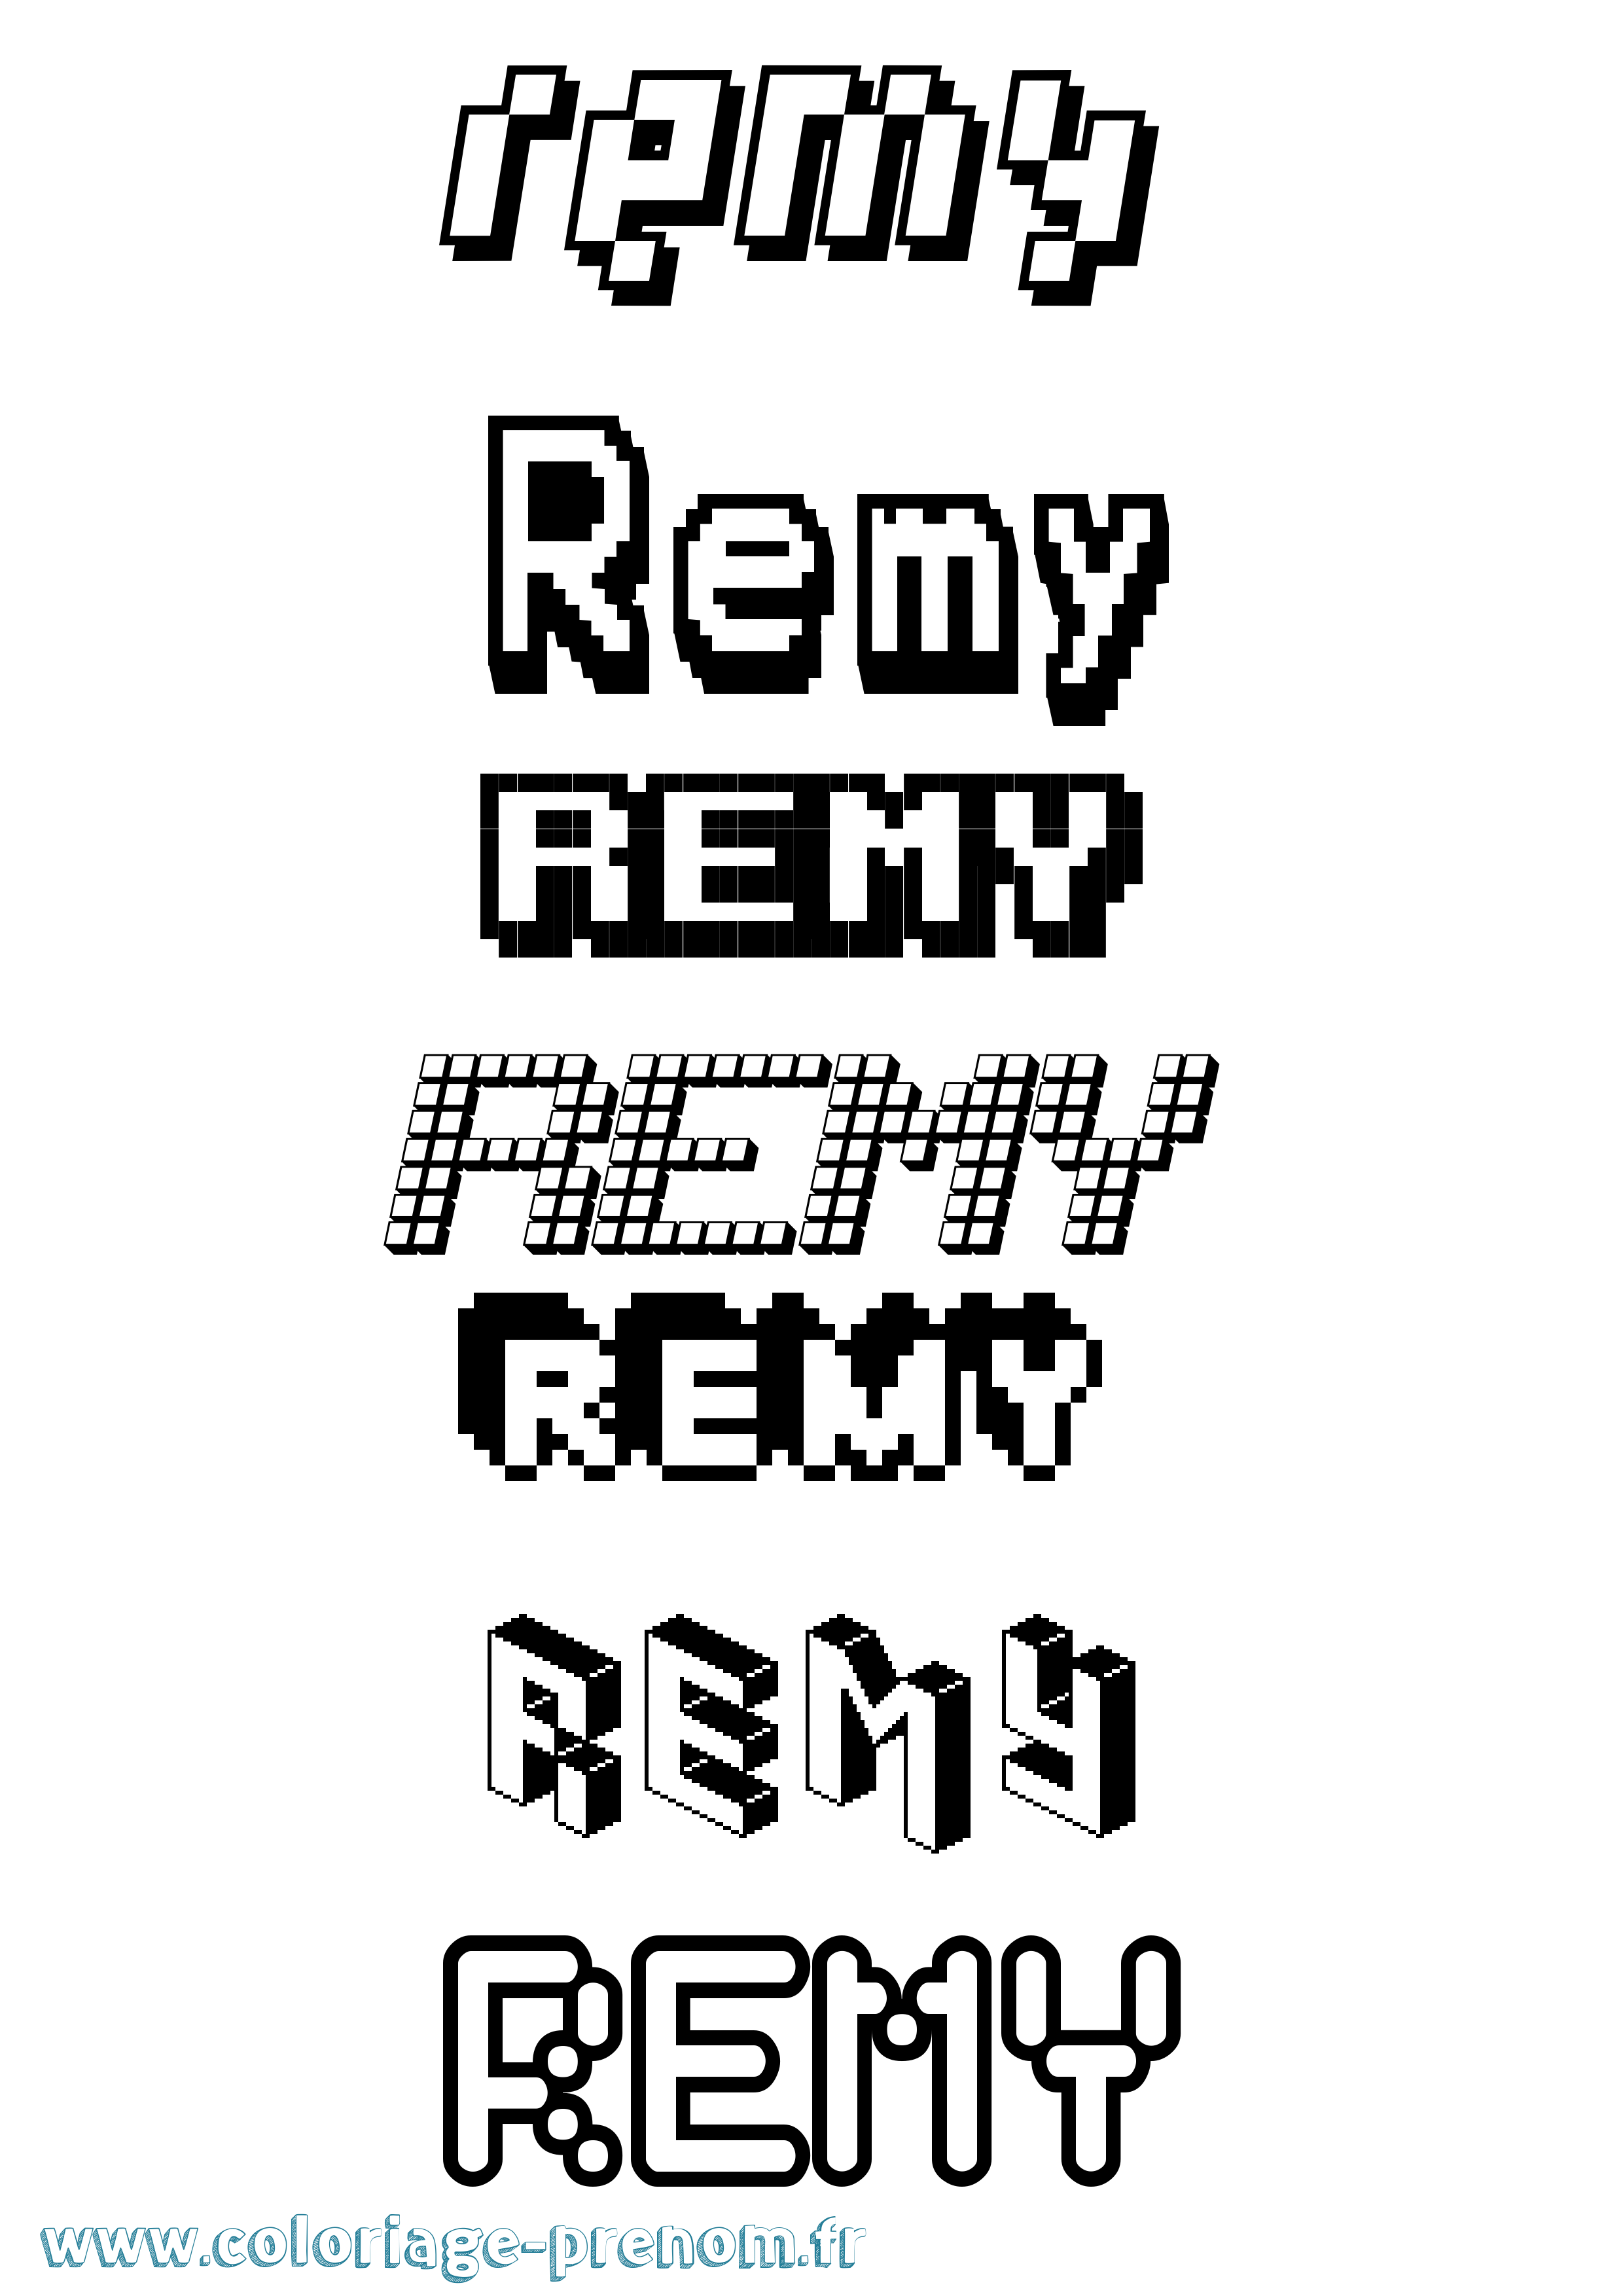 Coloriage prénom Remy Pixel